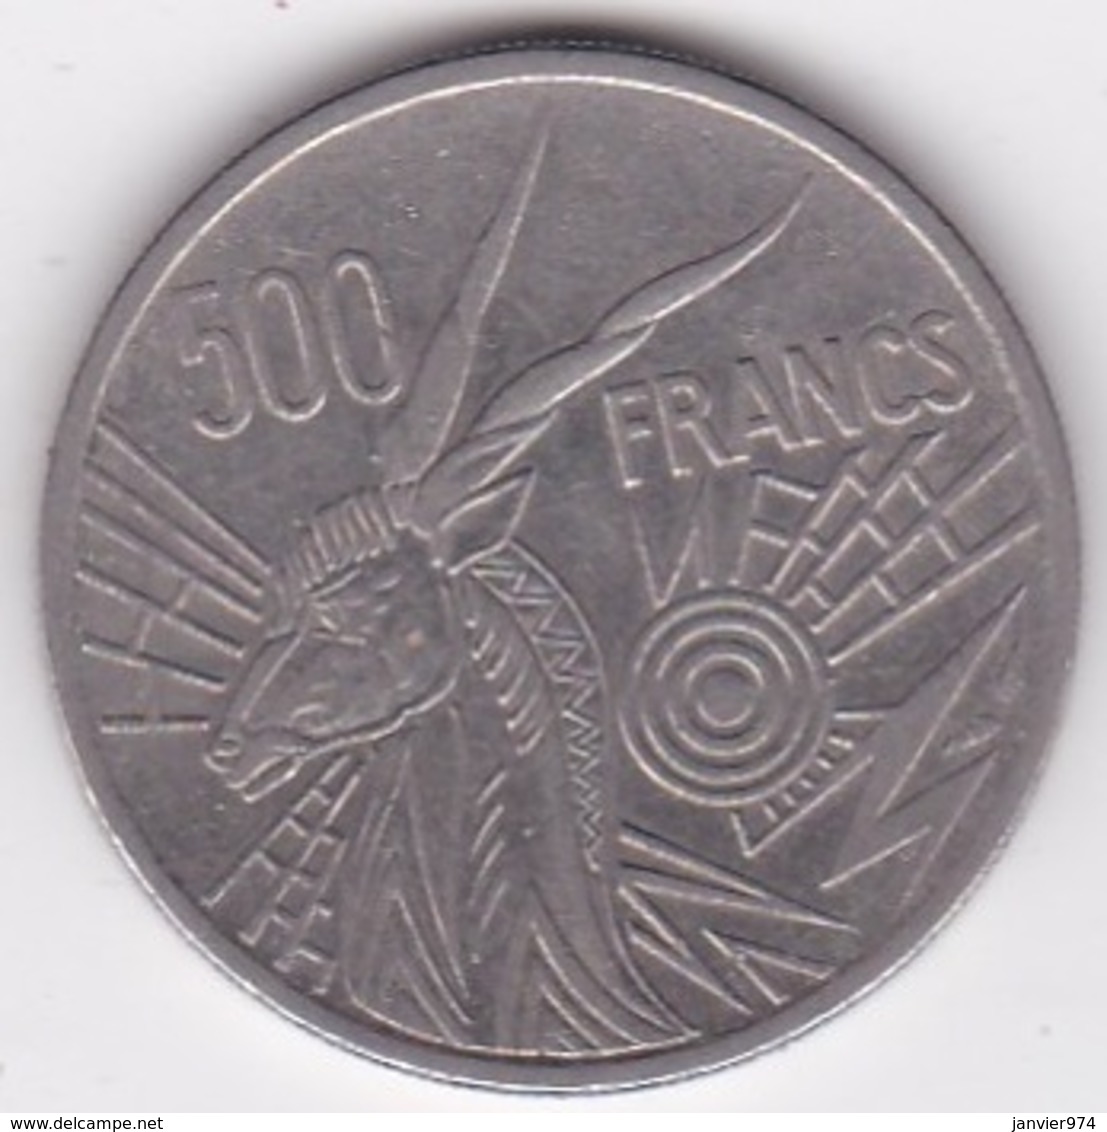 Banque Des Etats De L'Afrique Centrale. 500 Francs 1976 B Republique Centrafricaine - República Centroafricana